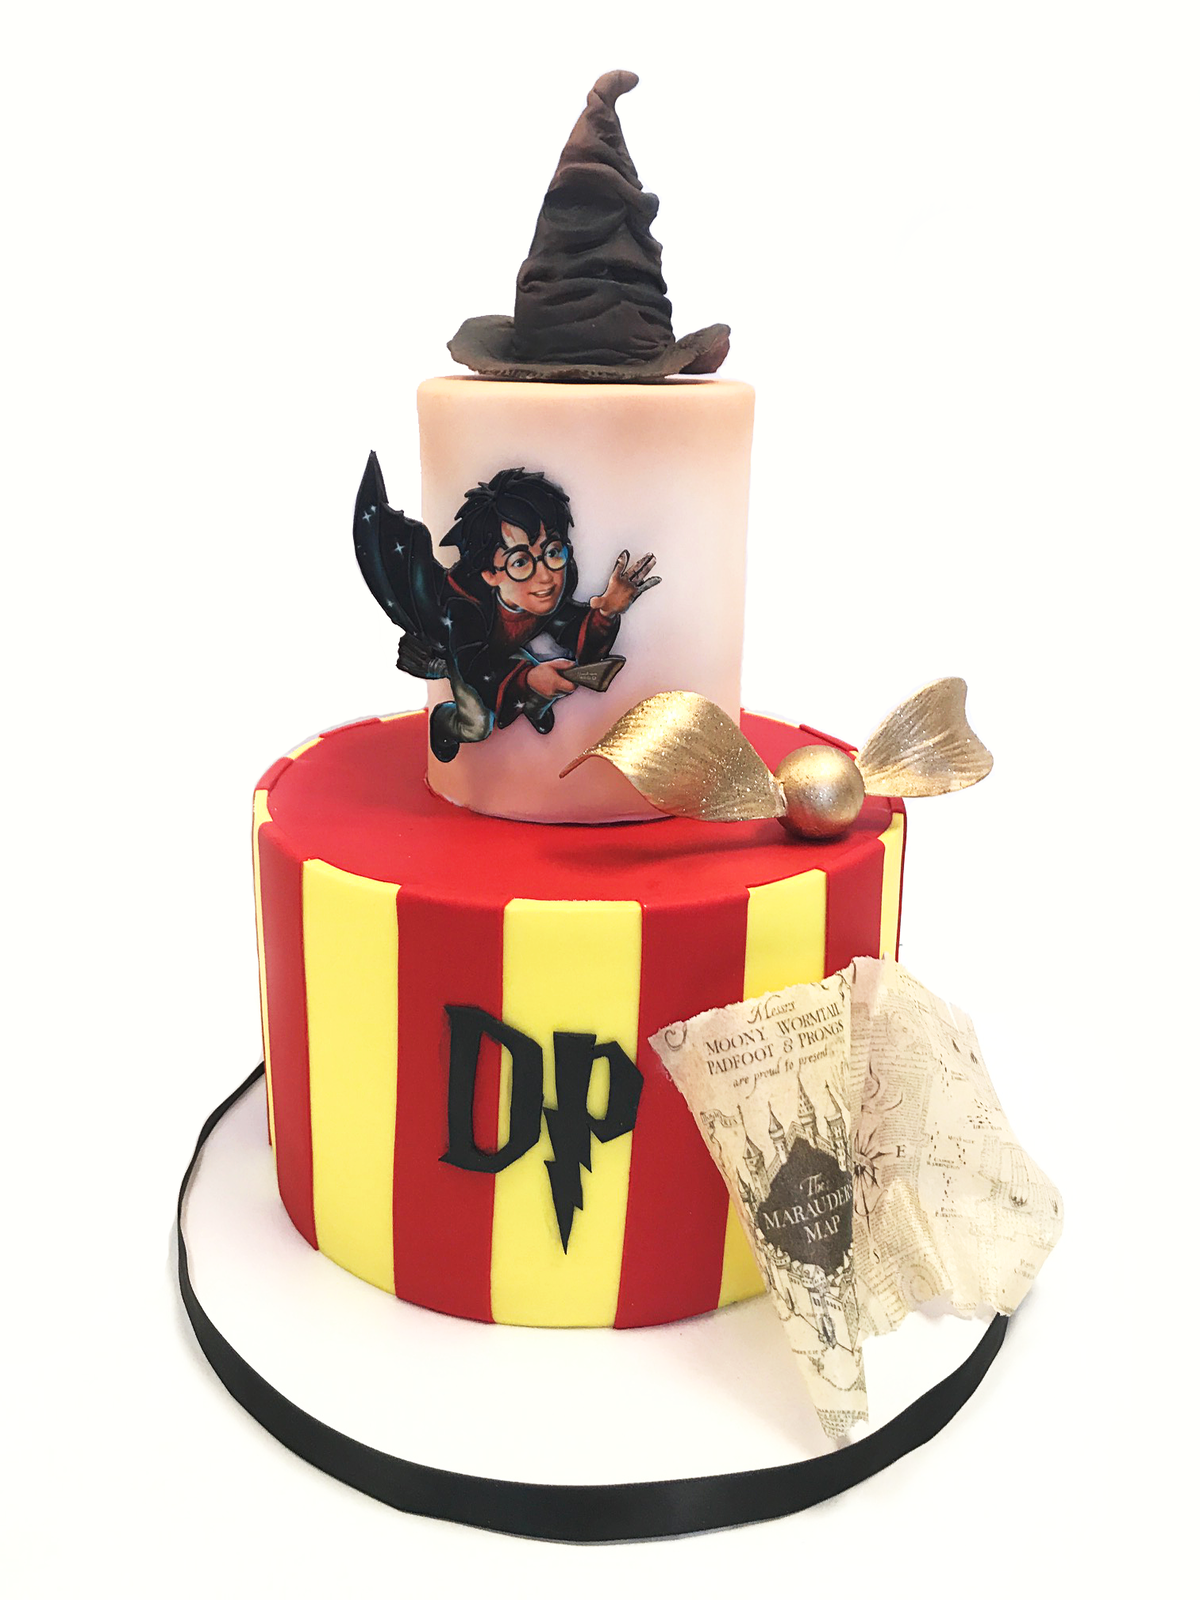 Whippt Desserts - Harry Potter cake 2017